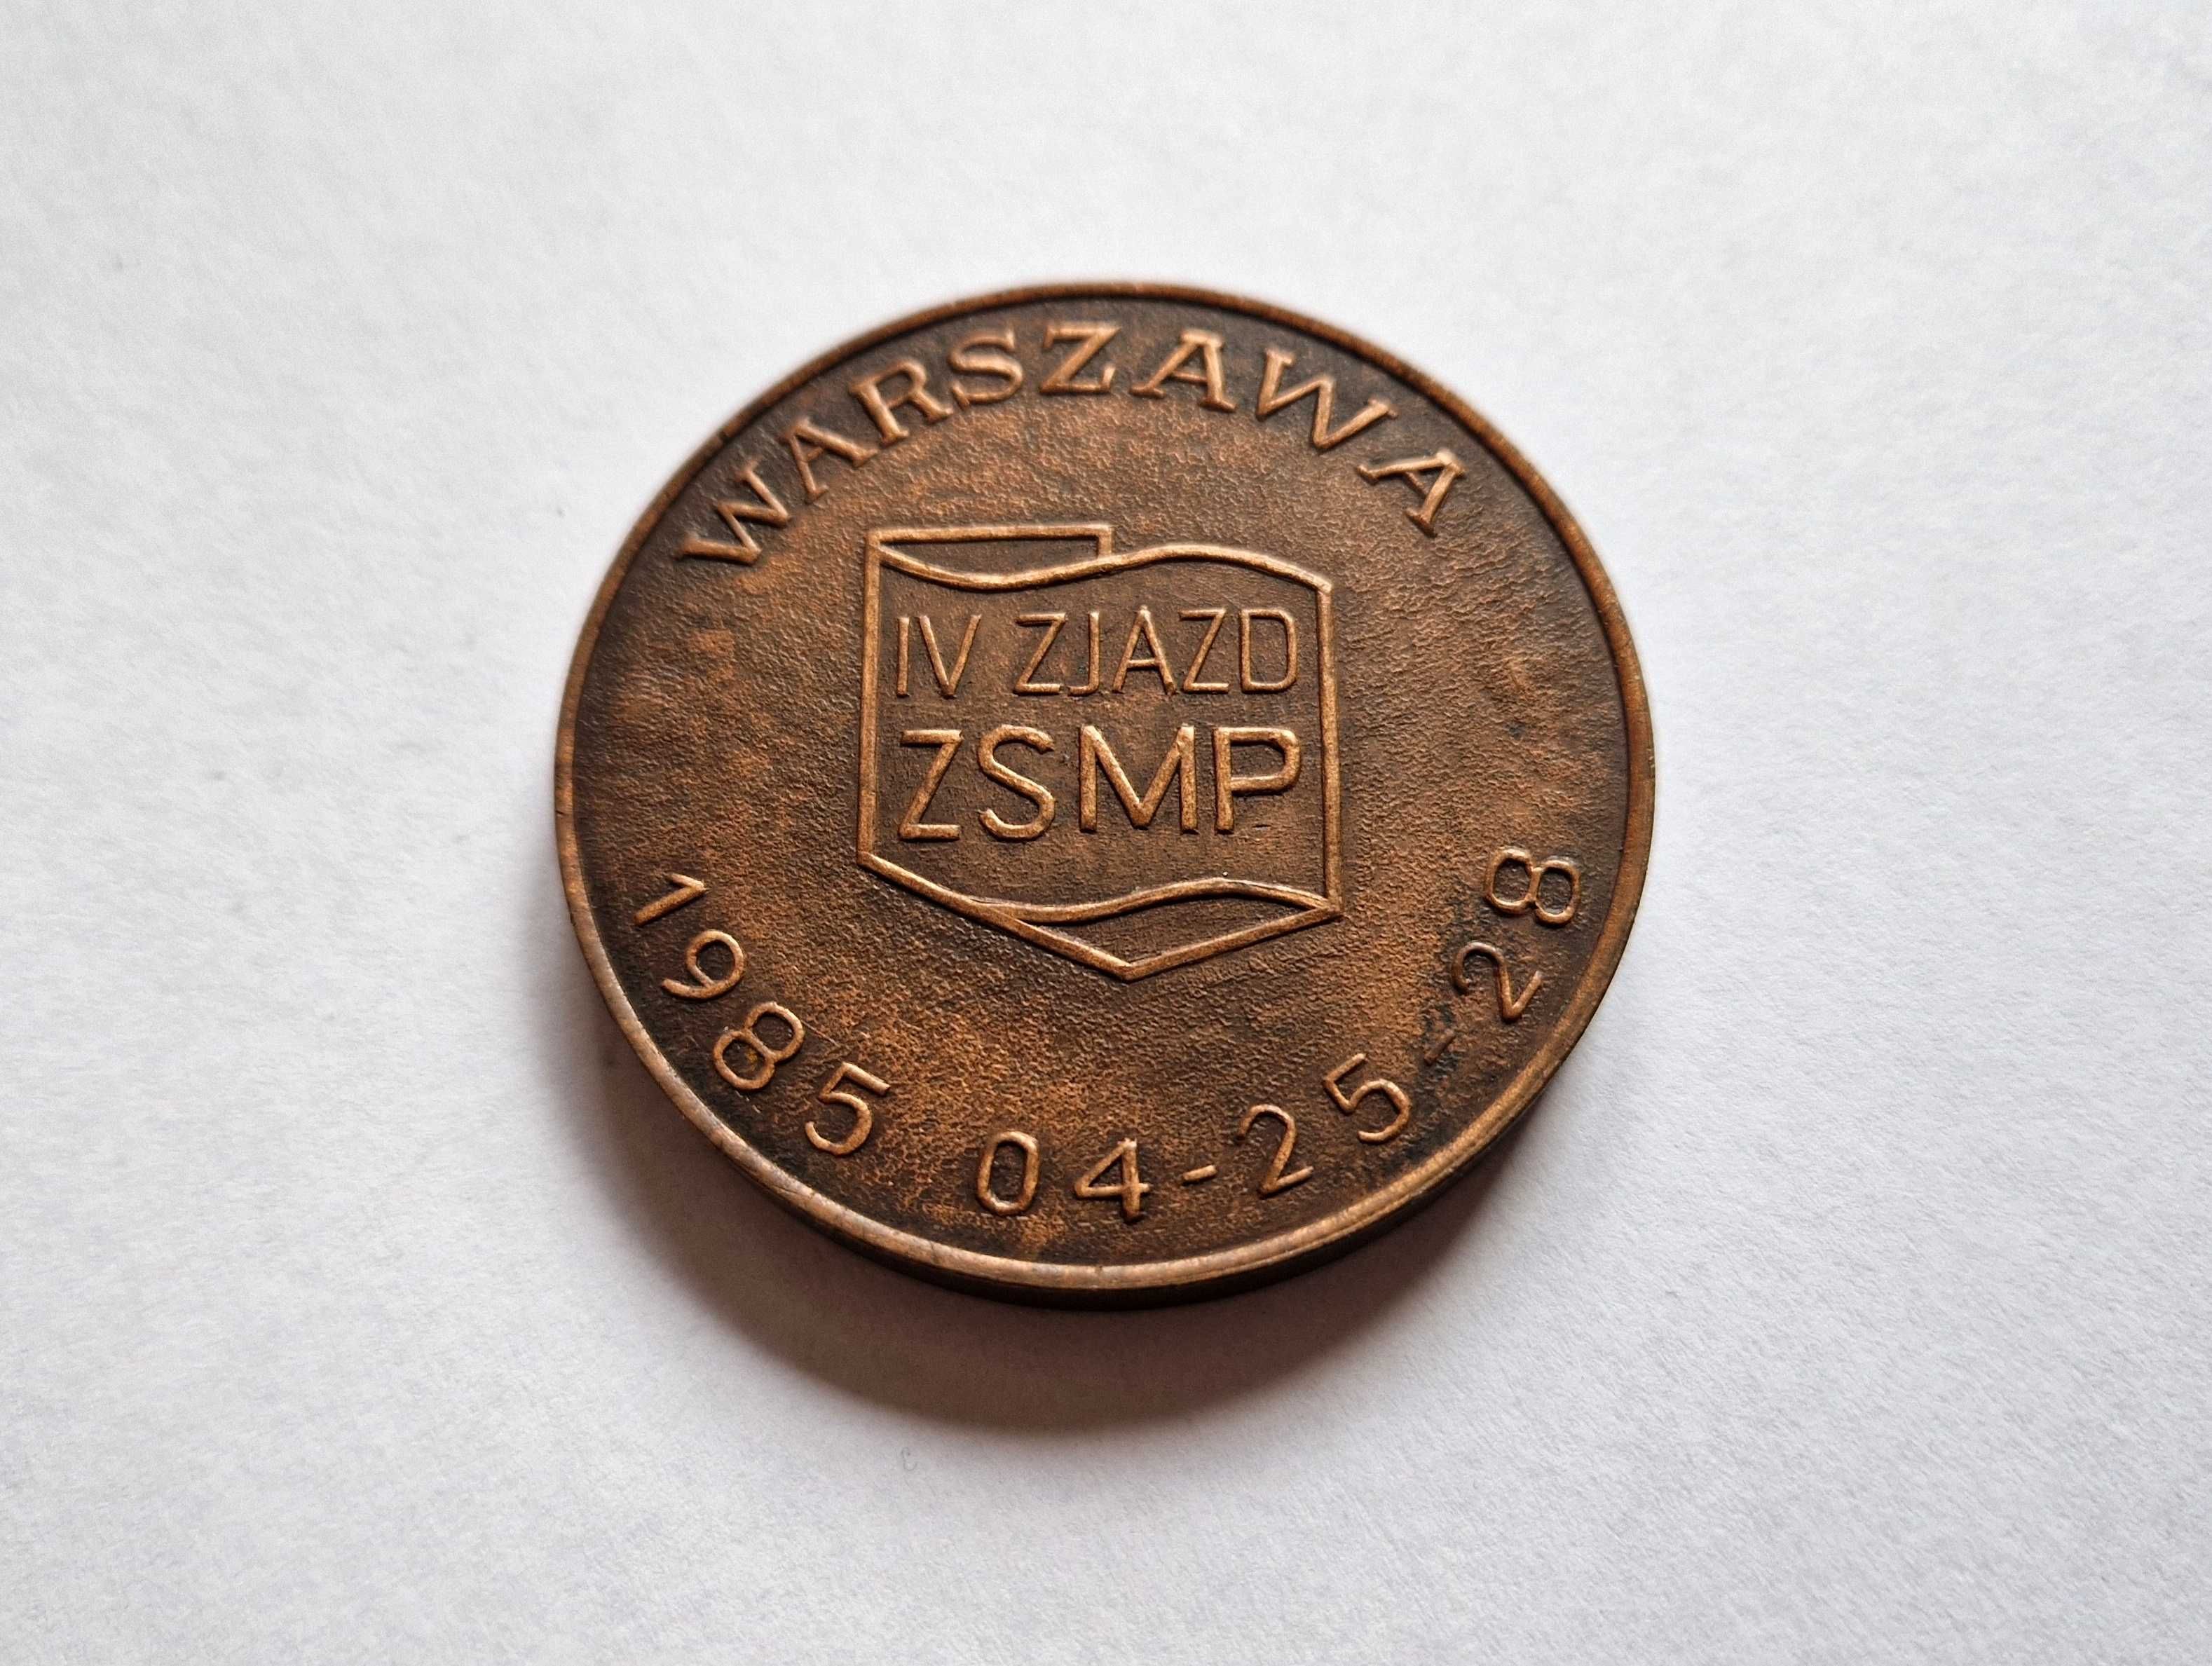 Odznaka / coin IV Zjazd ZSMP - Zarząd Główny 1985 (PRL)